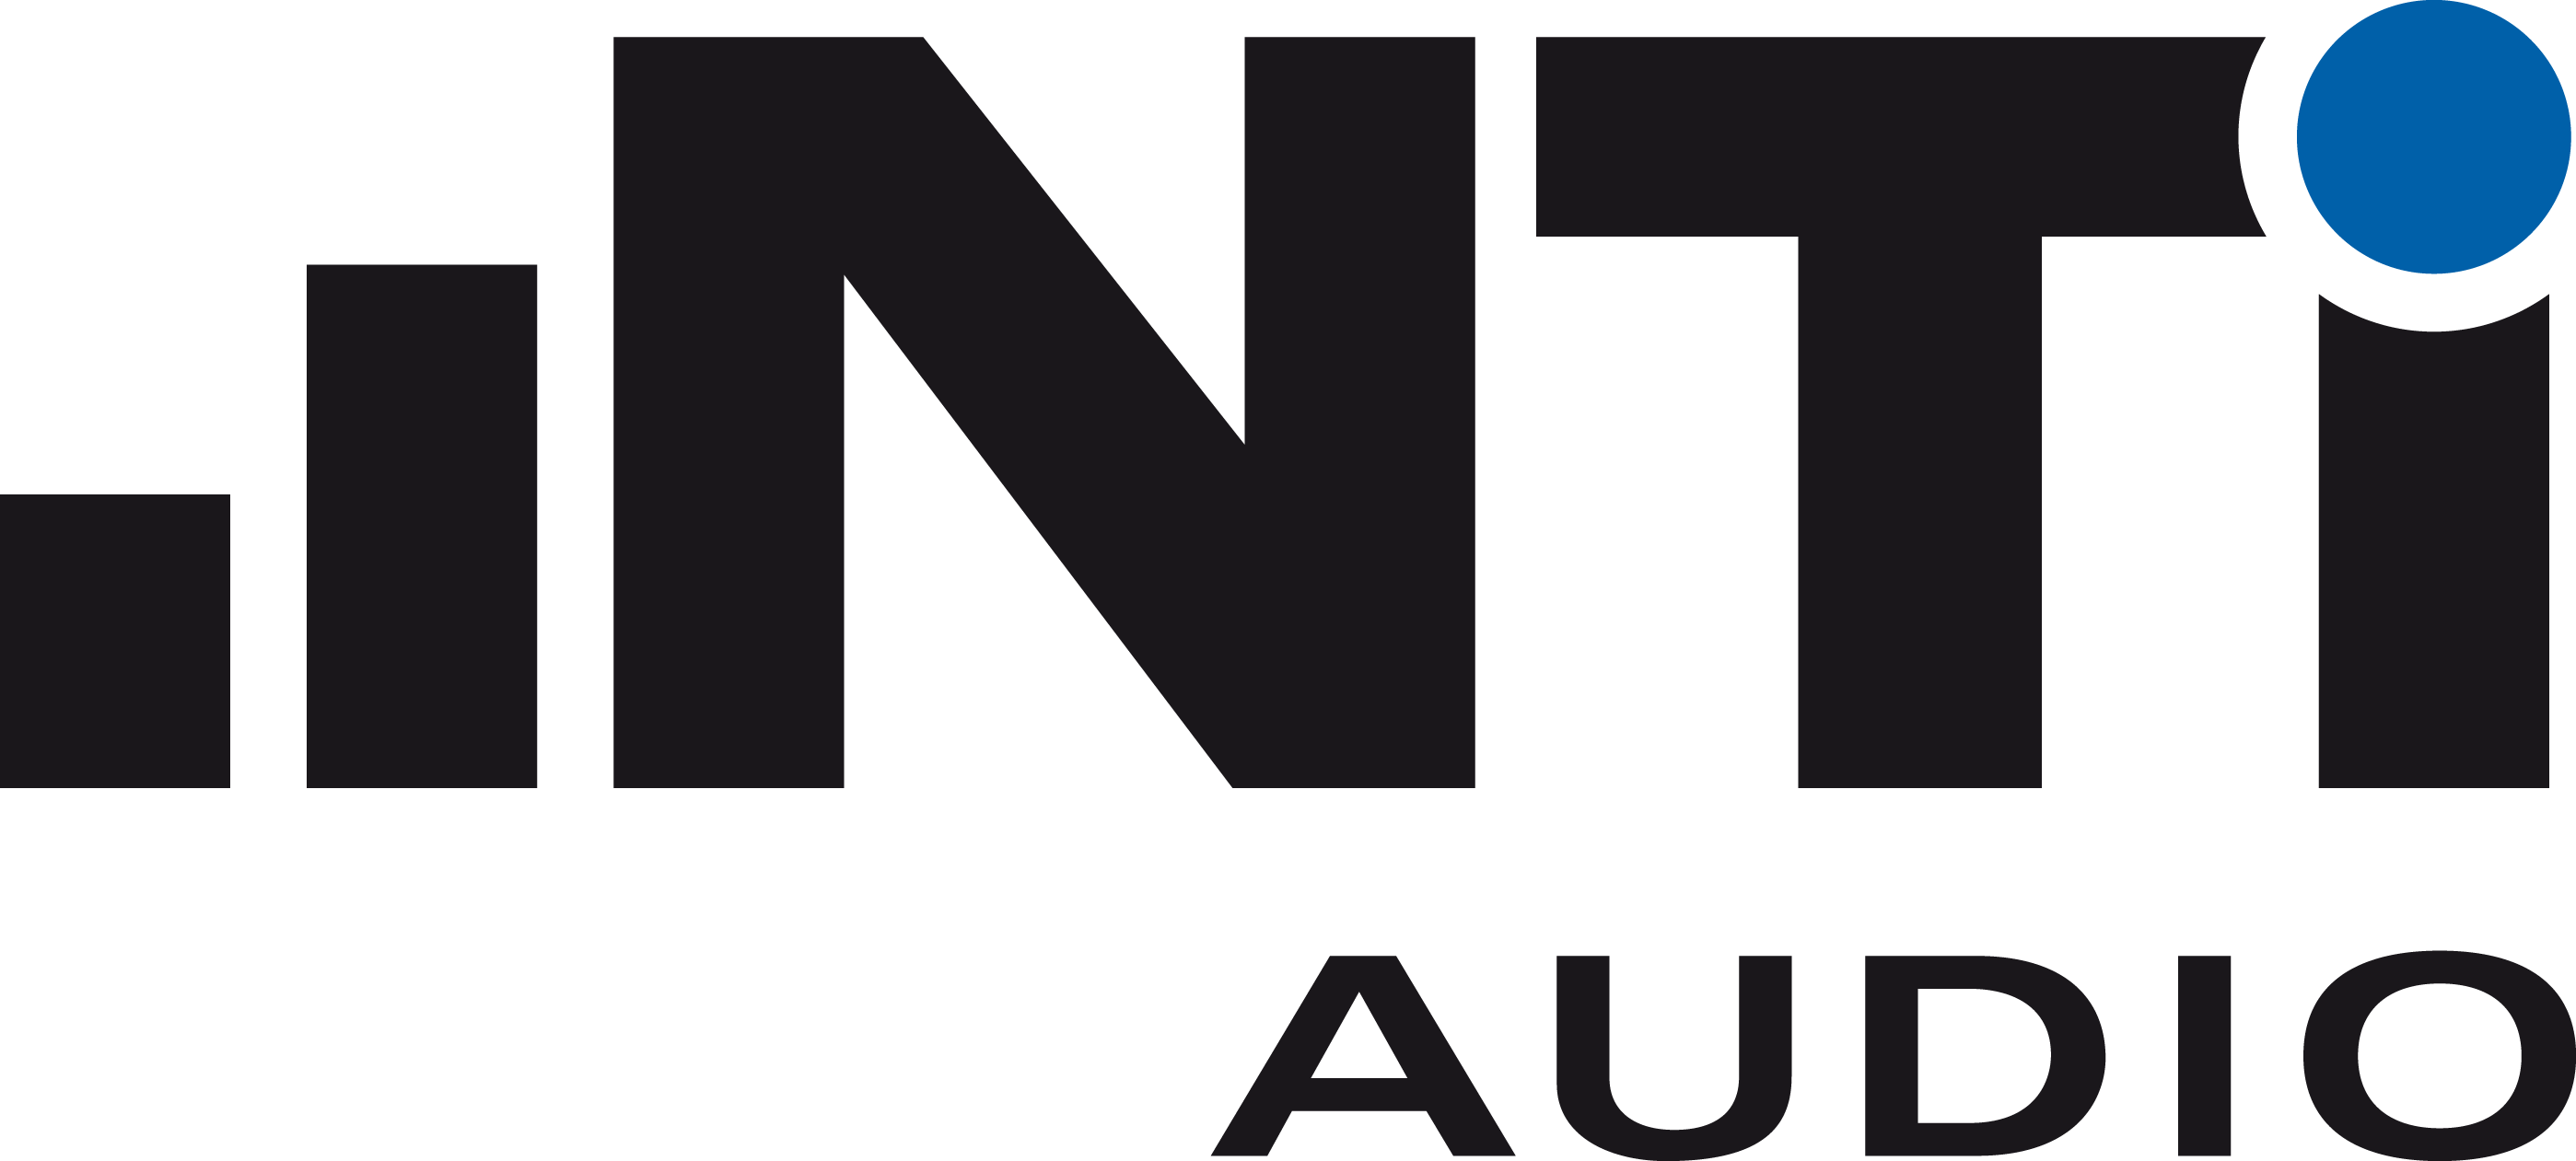 NTi Audio Logo